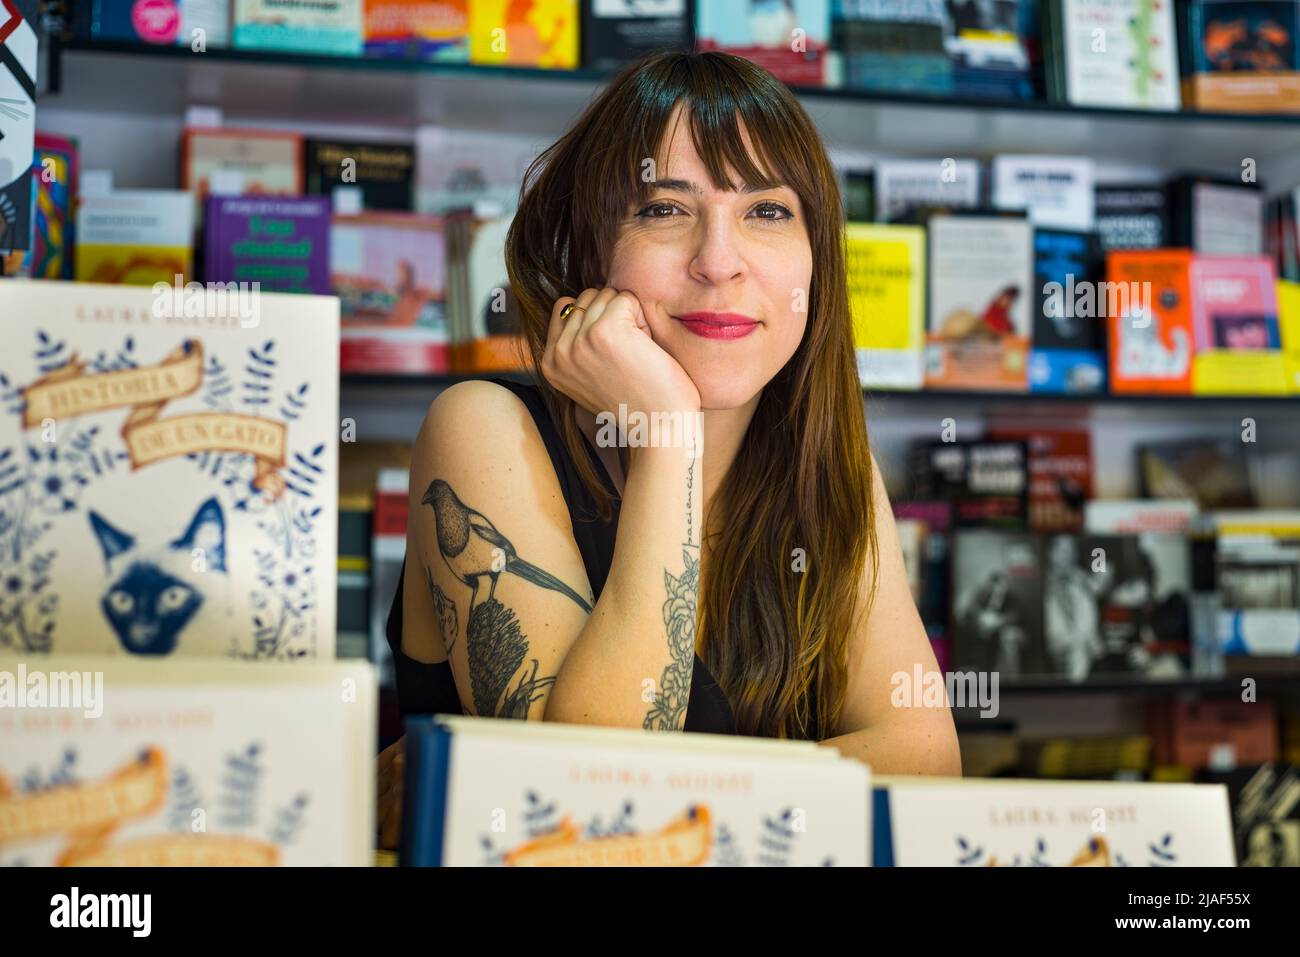 Portrait mit Blick auf die Kamera der spanischen Designerin und Illustratorin Laura Agusti, die mit ihrem Buch auf der Madrider Buchmesse posiert. Stockfoto